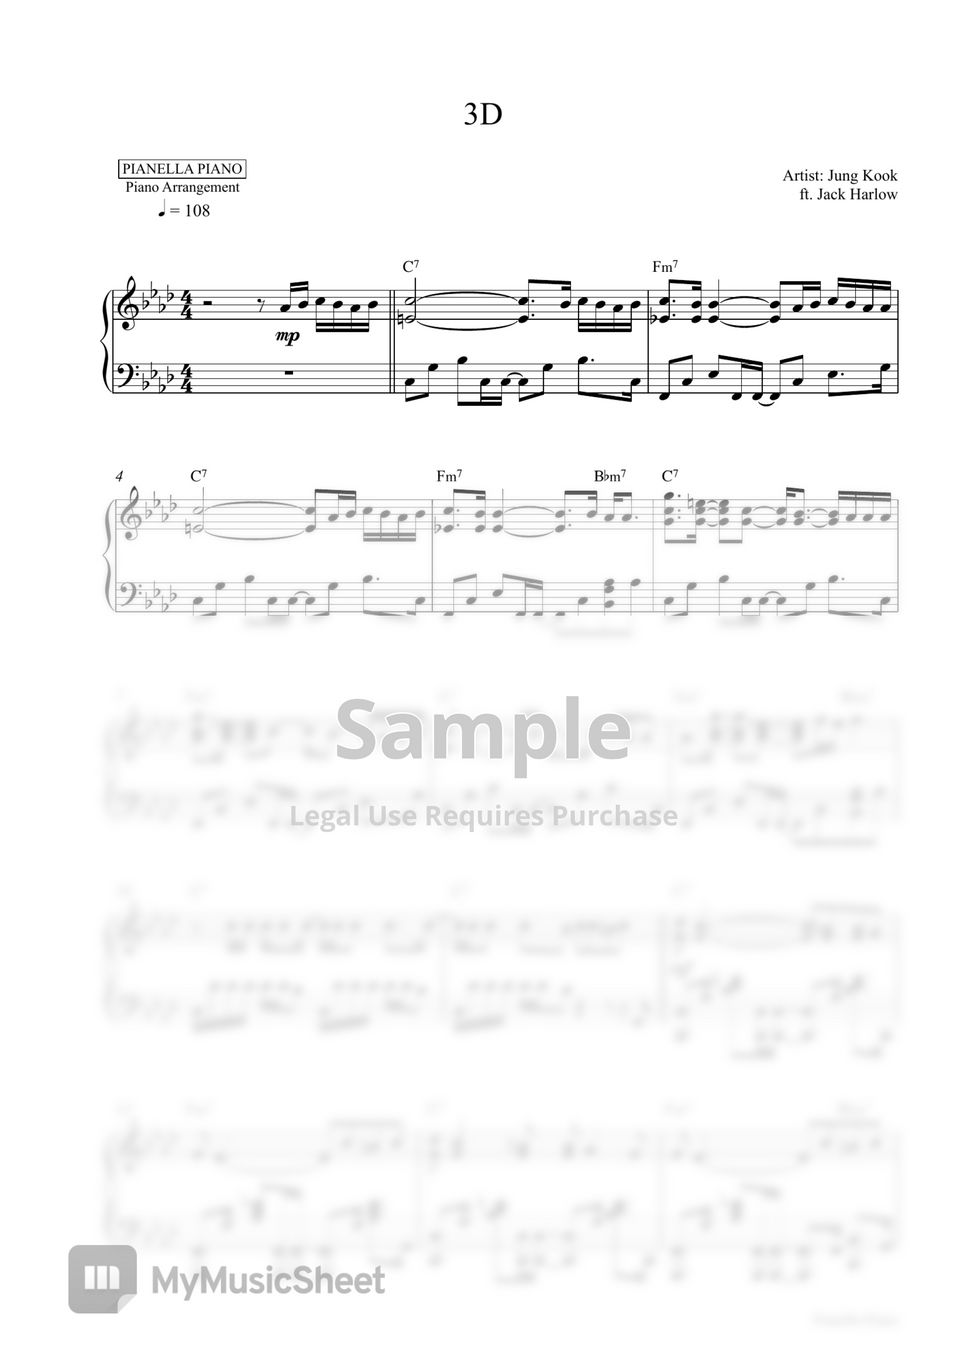 Jung Kook ft. Jack Harlow - 3D (Piano Sheet) by Pianella Piano